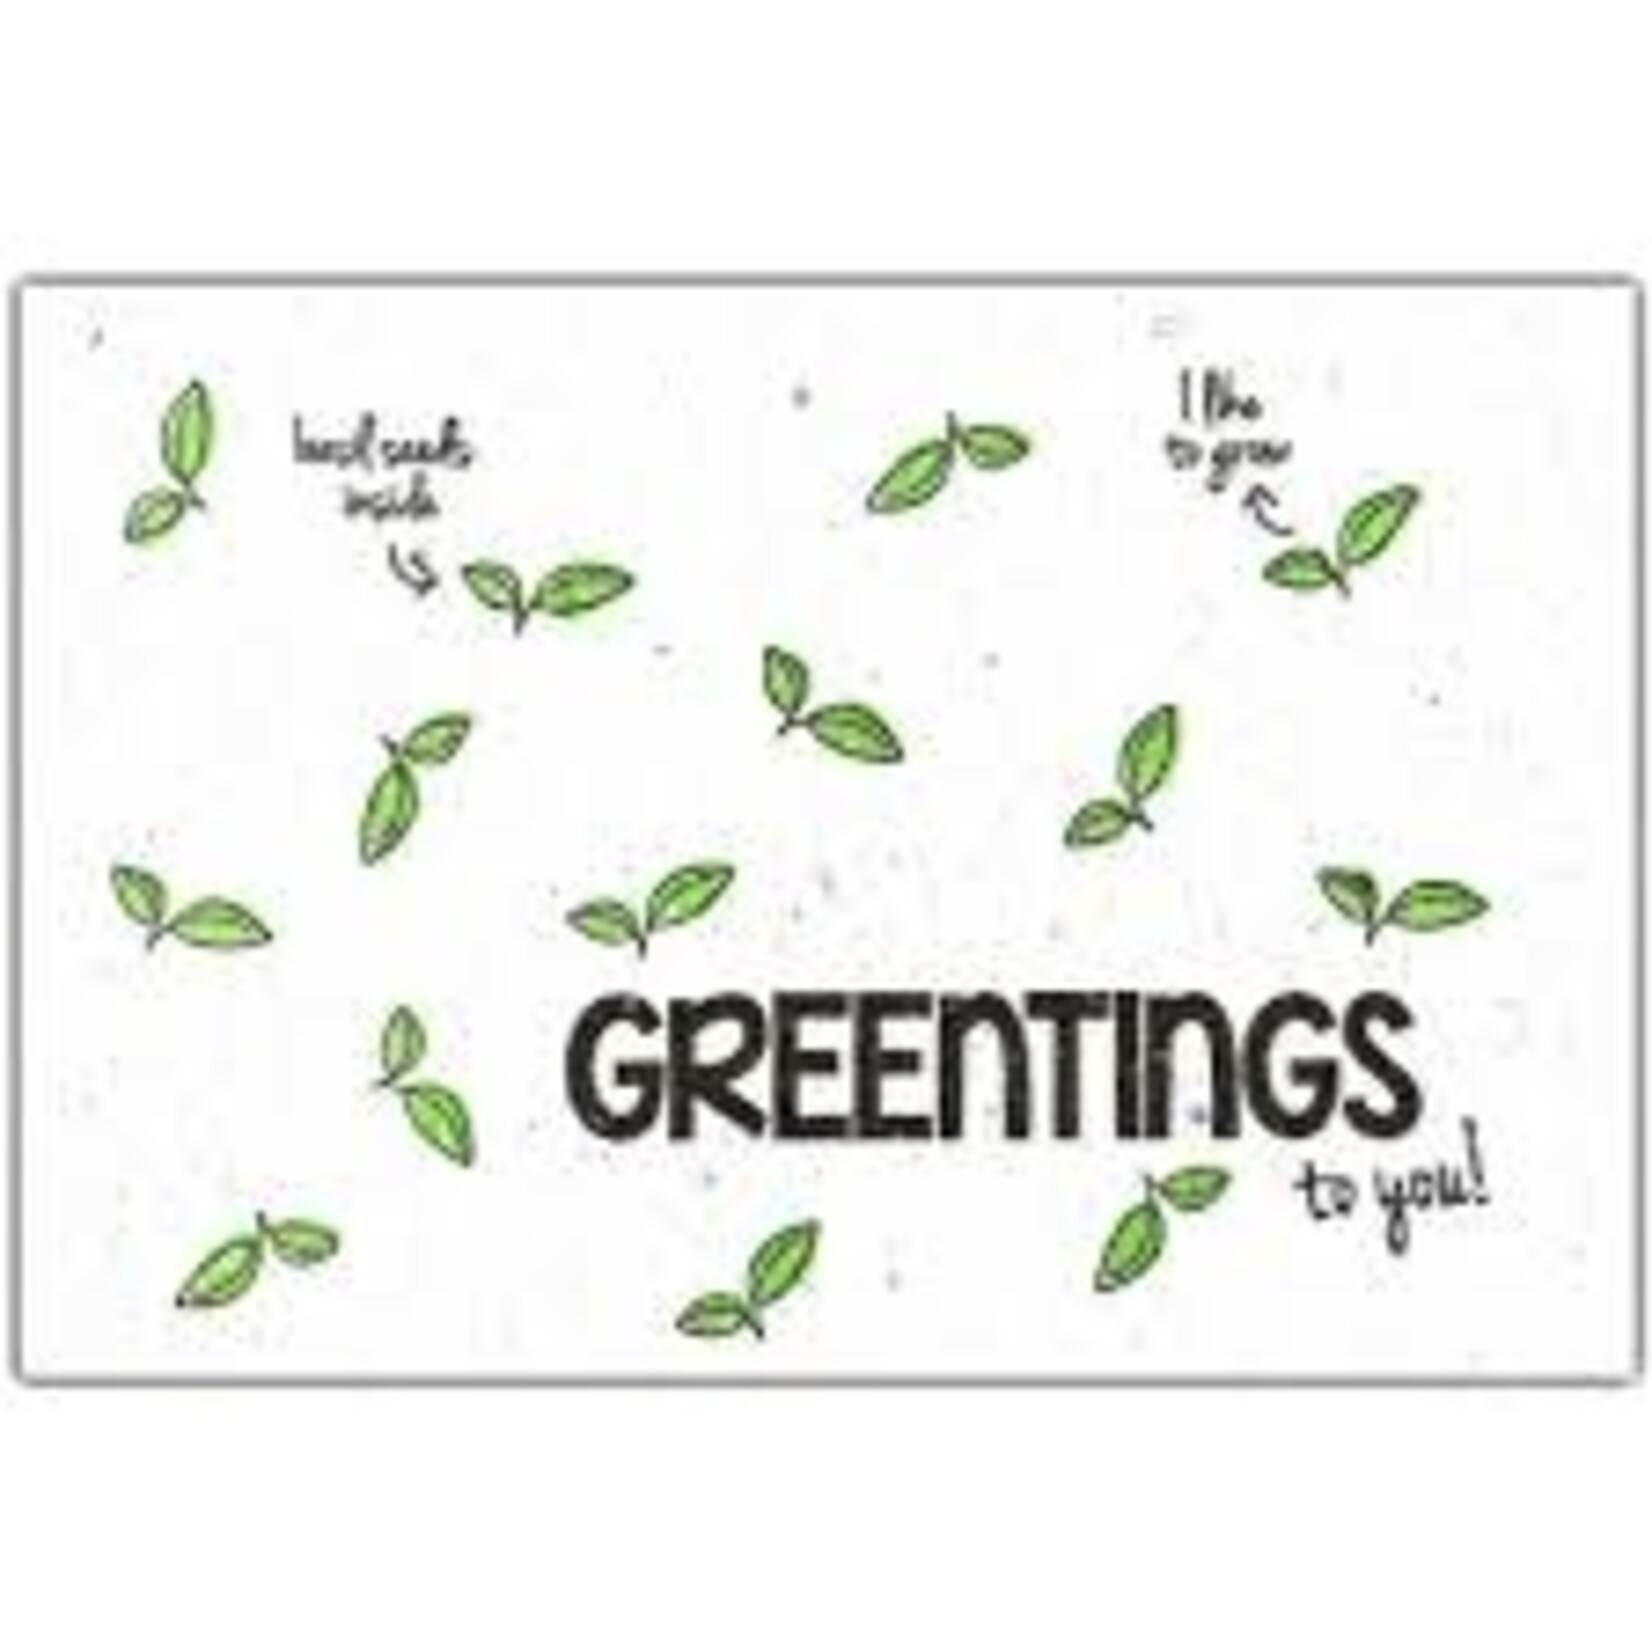 Greentings Basil kaartje